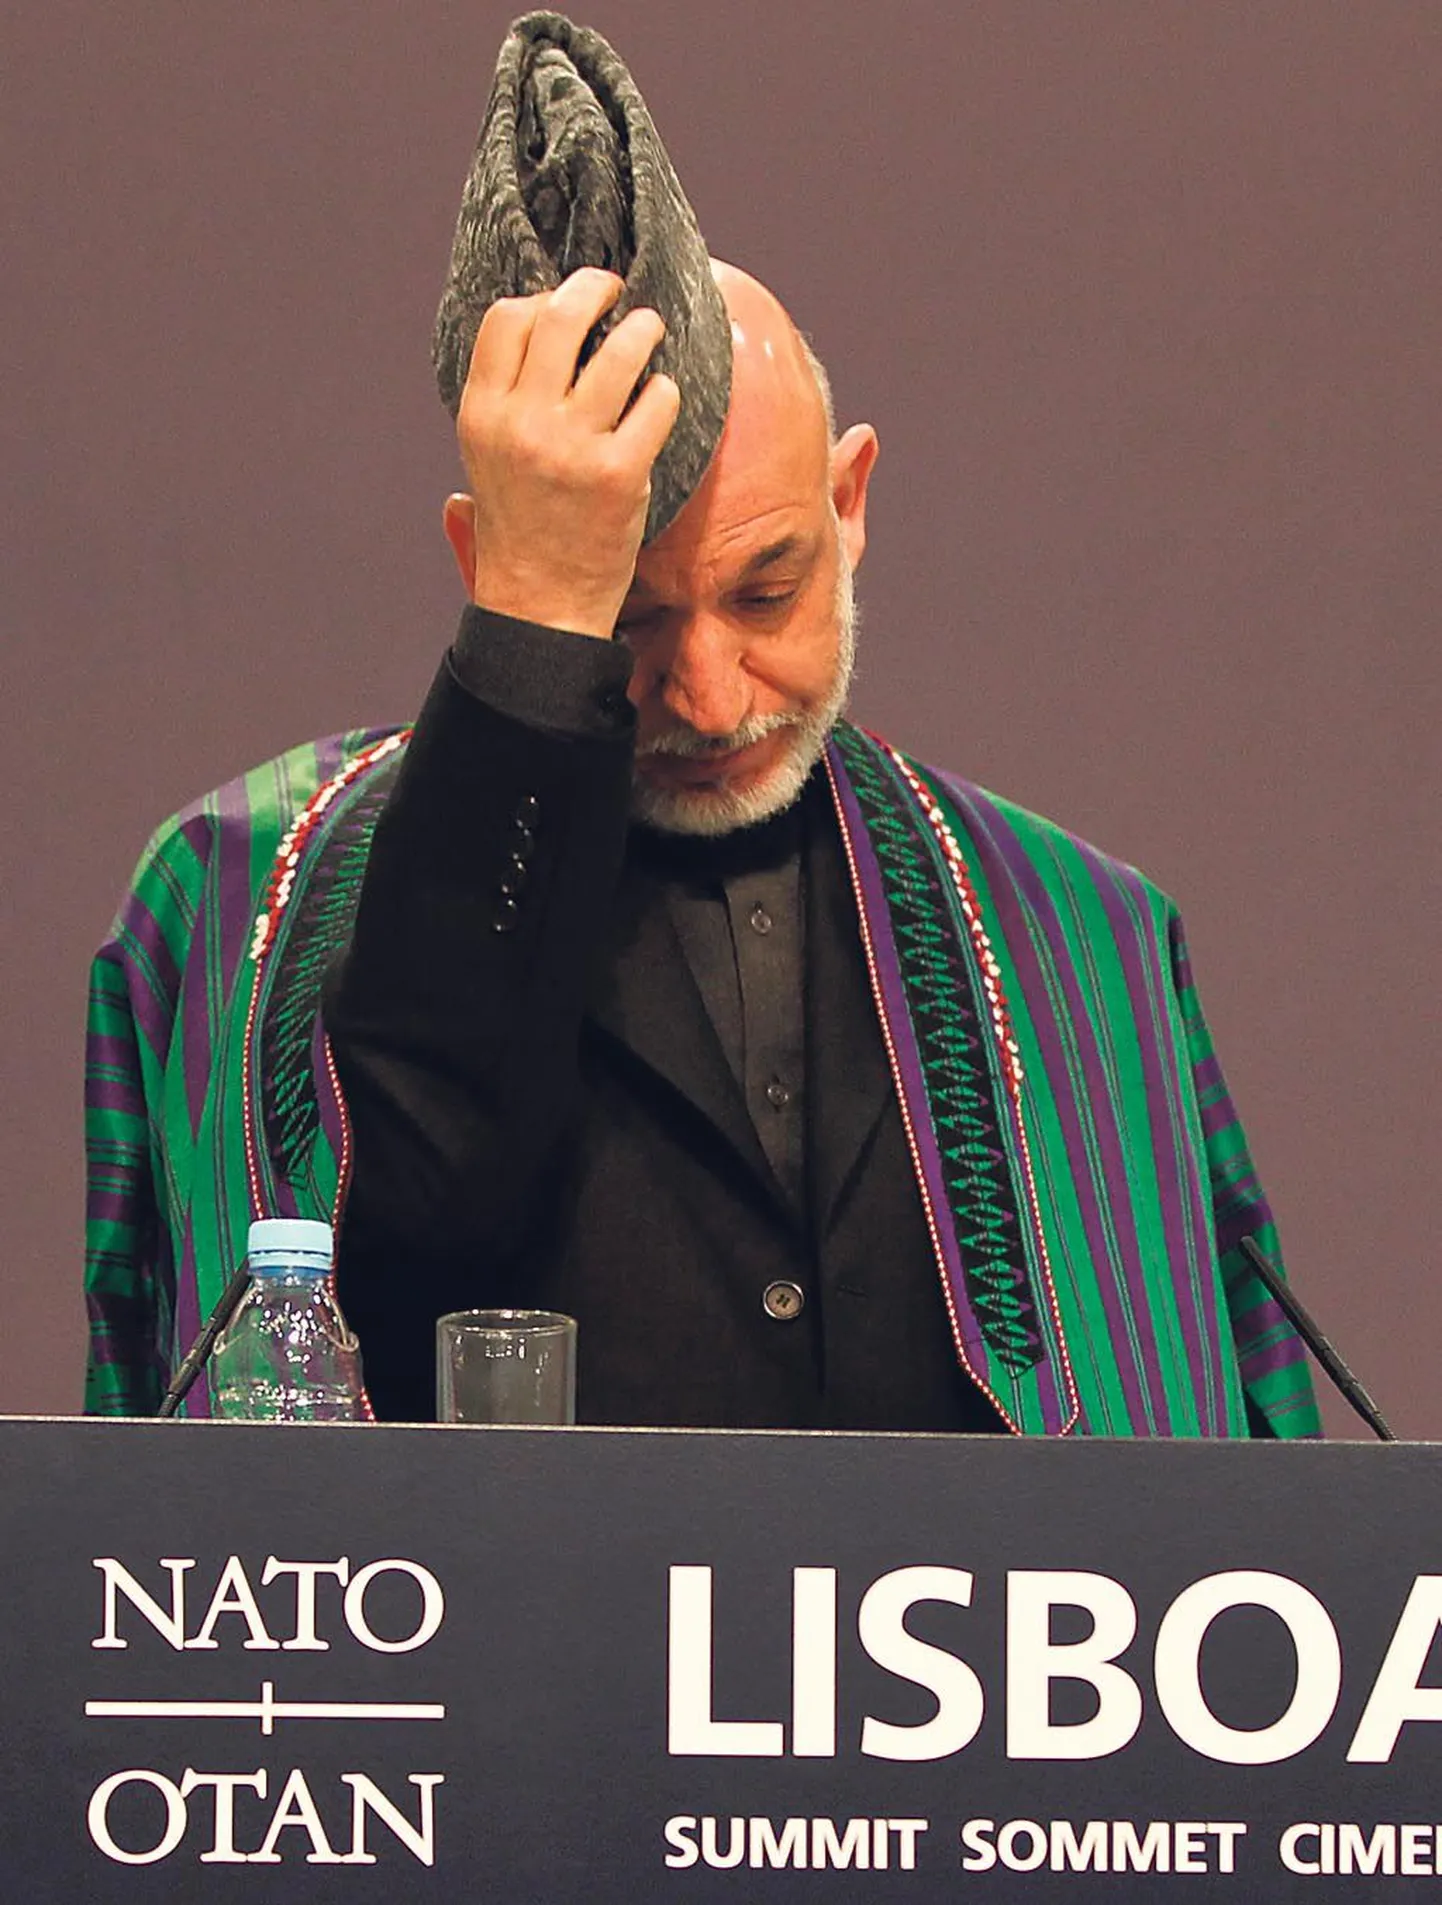 Mitmekordset mängu mängib Afganistani president Hamid Karzai, ei oska keegi täpselt öelda. Igal juhul on esimest korda NATO ajaloos saanud ühest kaugest riigist selle kaitseliidu olemise ja tegevuse keskne määraja.